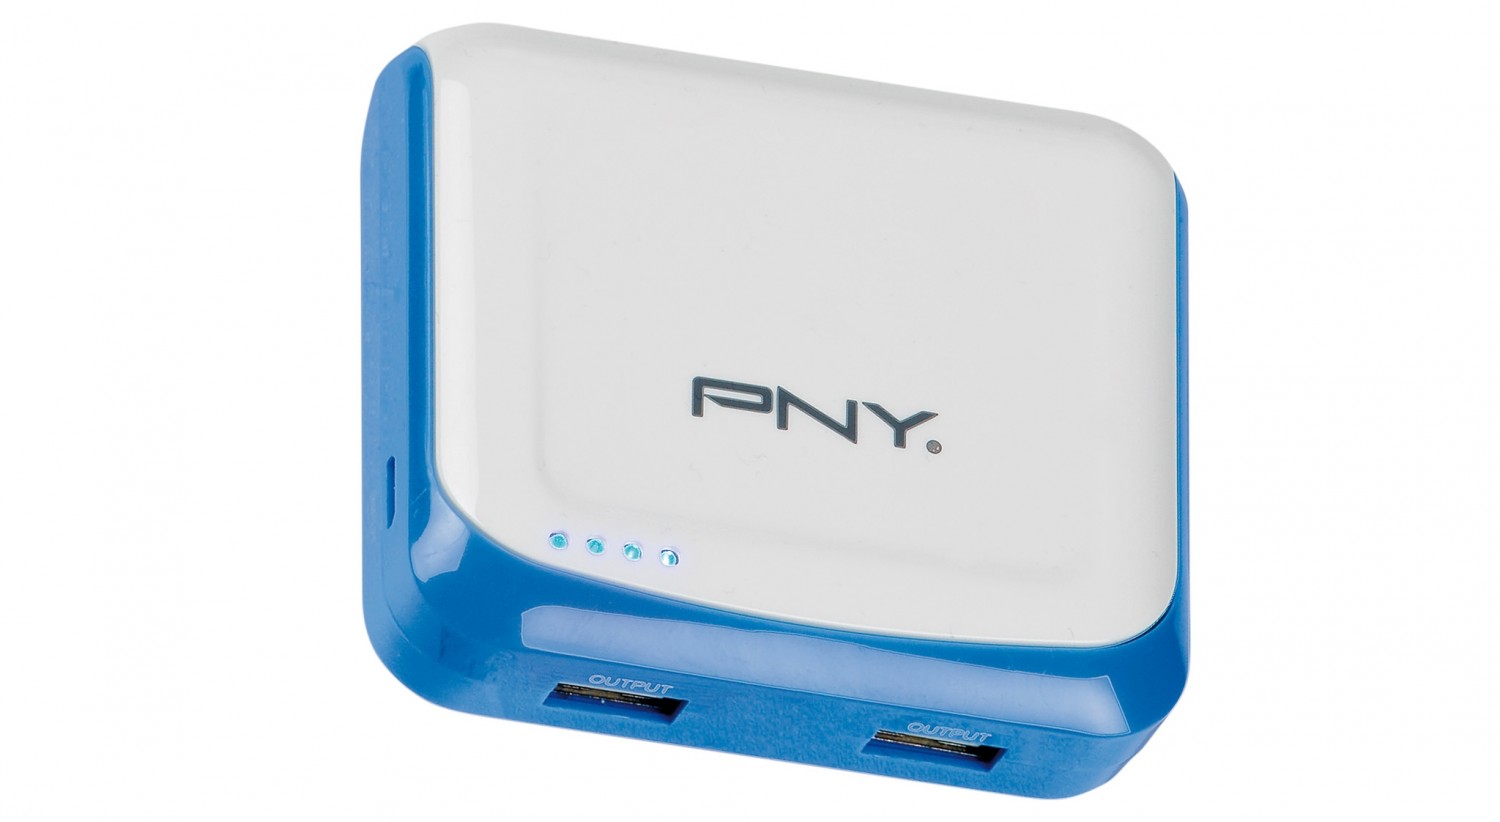 Zubehör Tablet und Smartphone PNY Mobile Power Fancy im Test, Bild 1